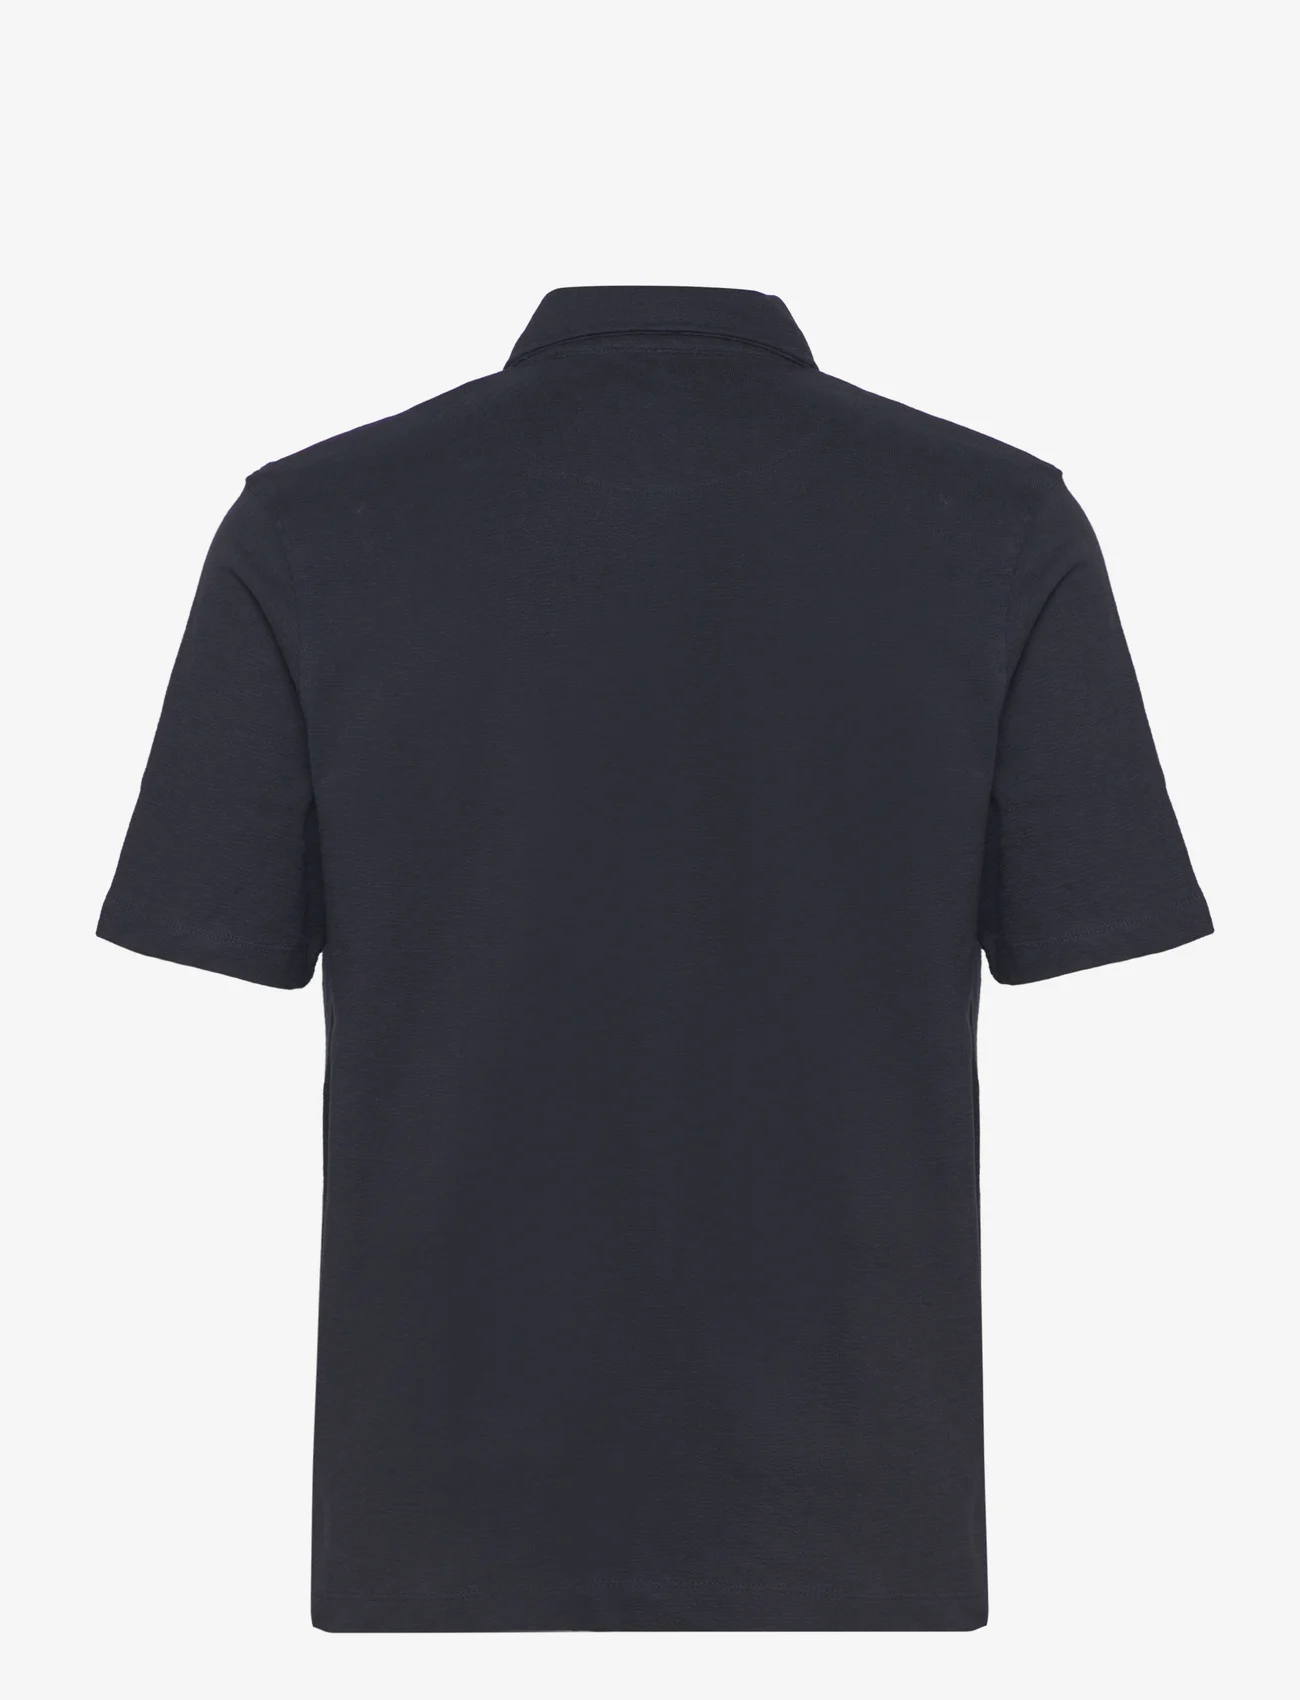 Clean Cut Copenhagen - Calton Structured Shirt S/S - korte mouwen - dark navy - 1